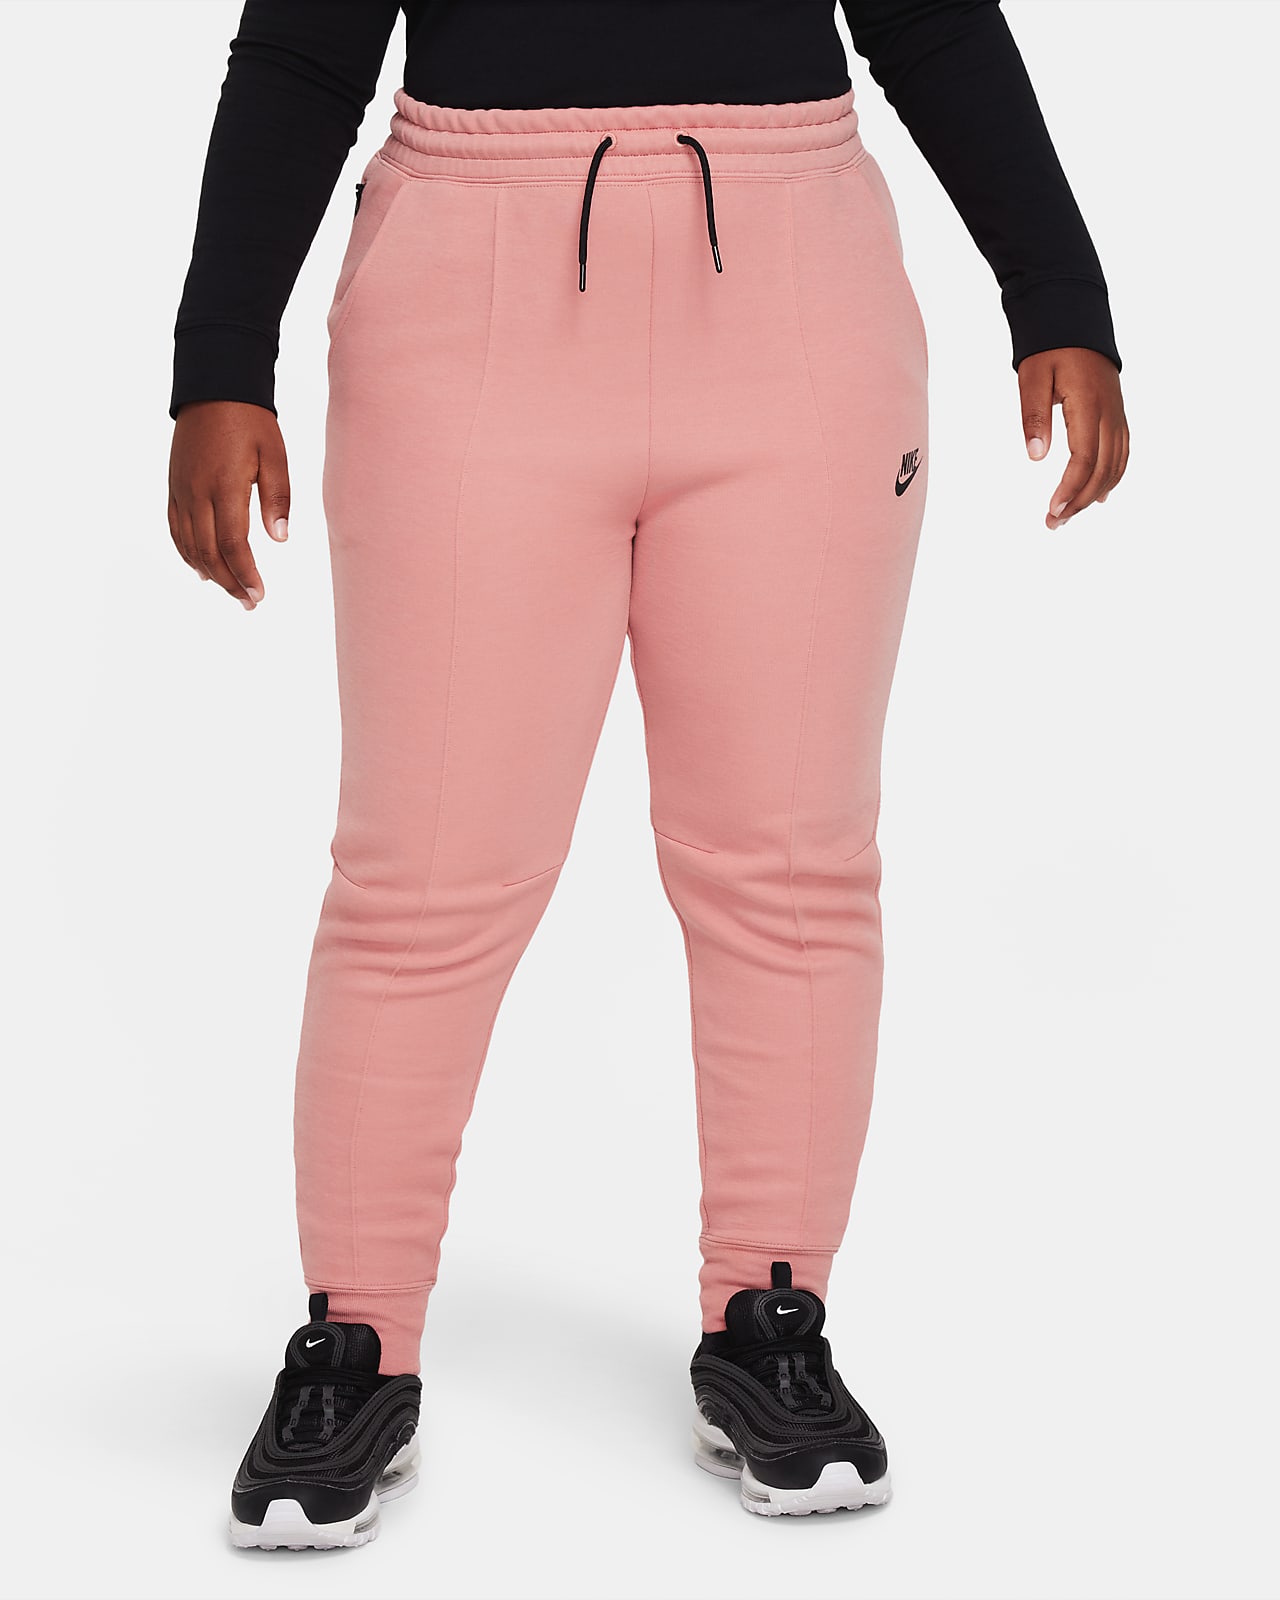 escort gijzelaar Aanpassing Nike Sportswear Tech Fleece Big Kids' (Girls') Joggers (Extended Size). Nike .com